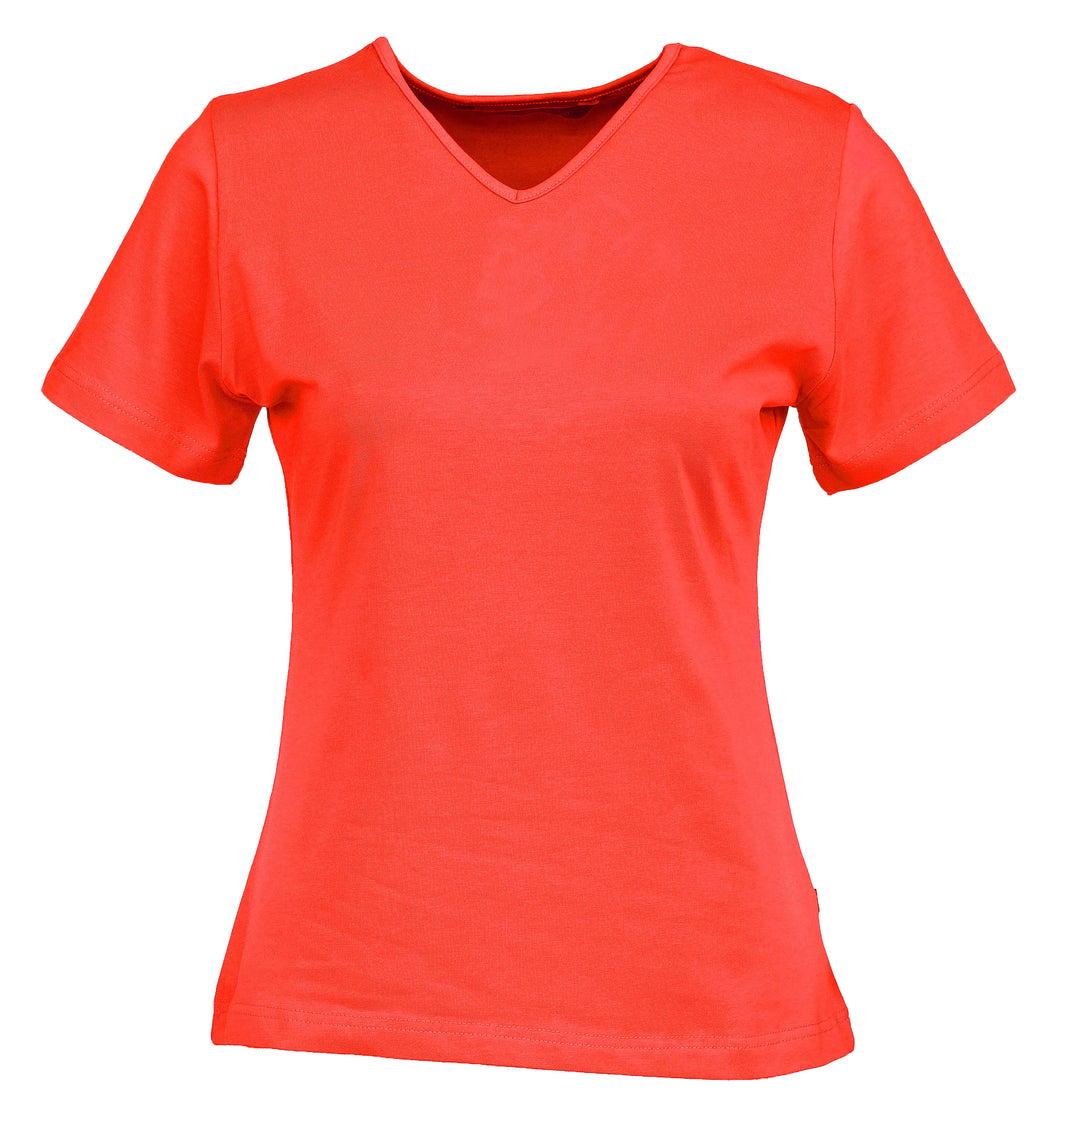 Naisten lyhythihainen korallinpunainen T-paita v-pääntiellä. Malli on aavistuksen tyköistuva. 